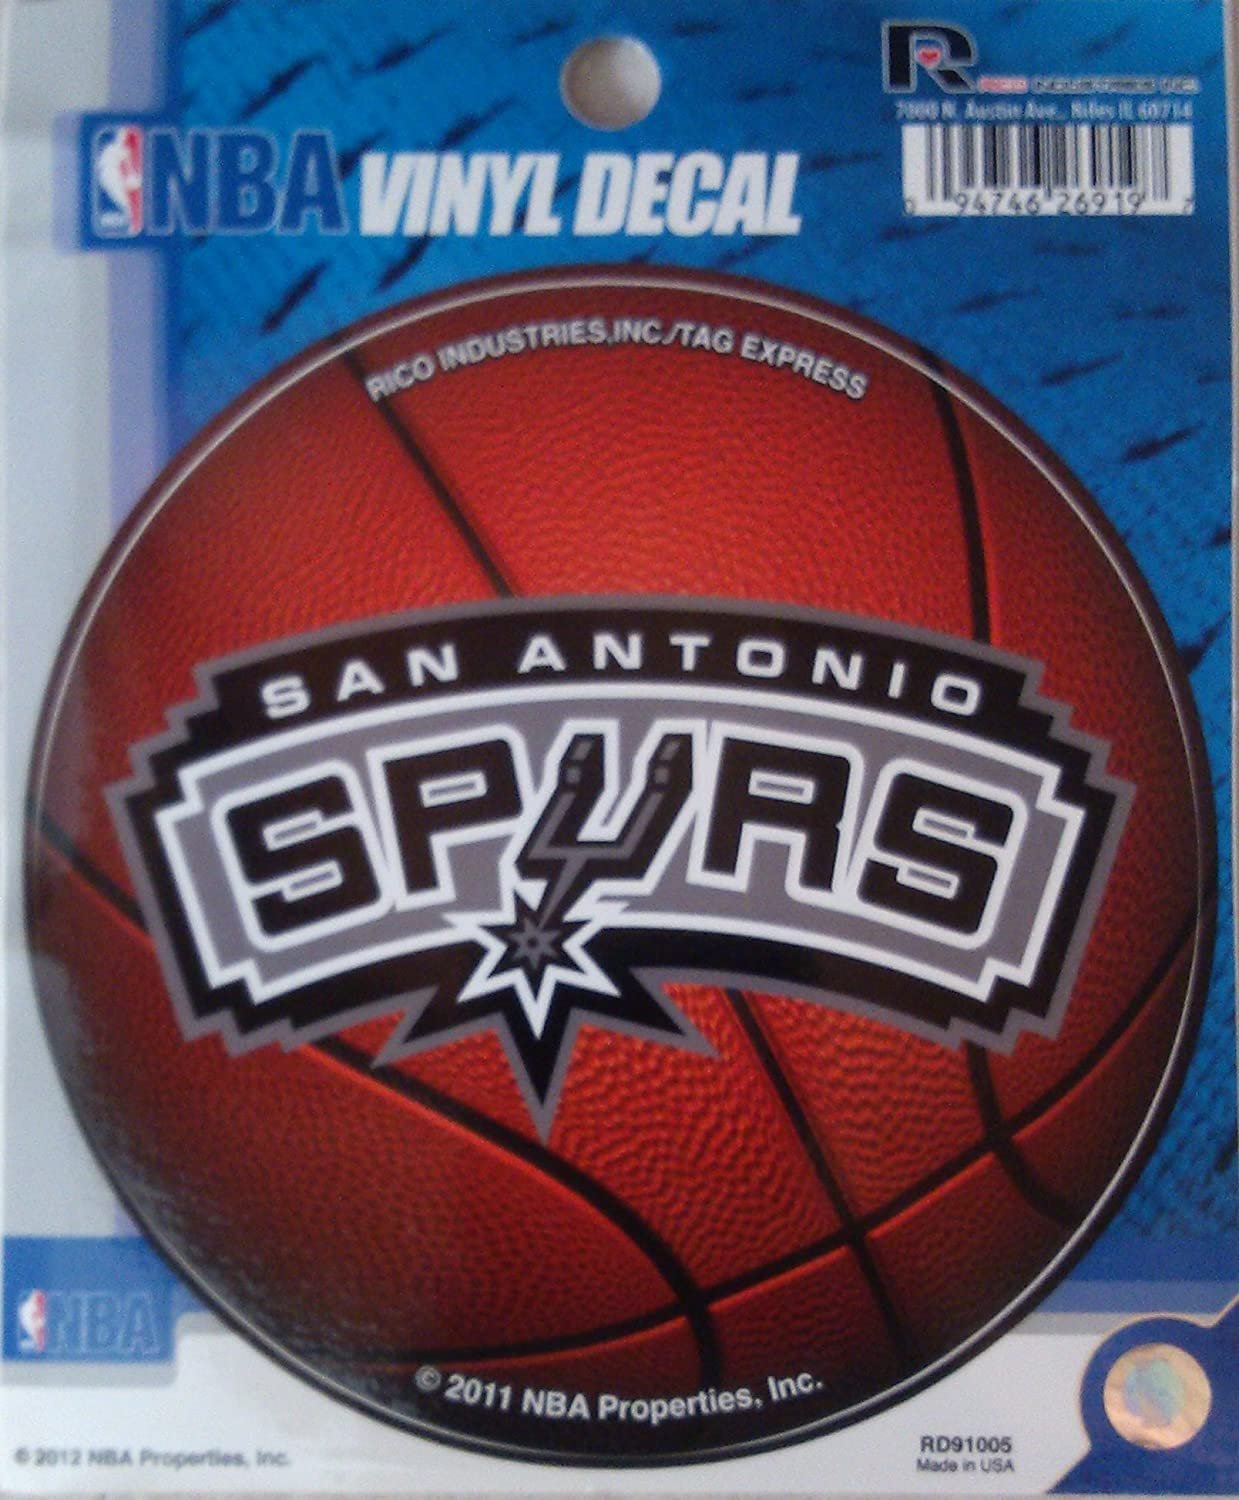 San Antonio Spurs 4 Inch Round Decal Sticker Flat Vinyl